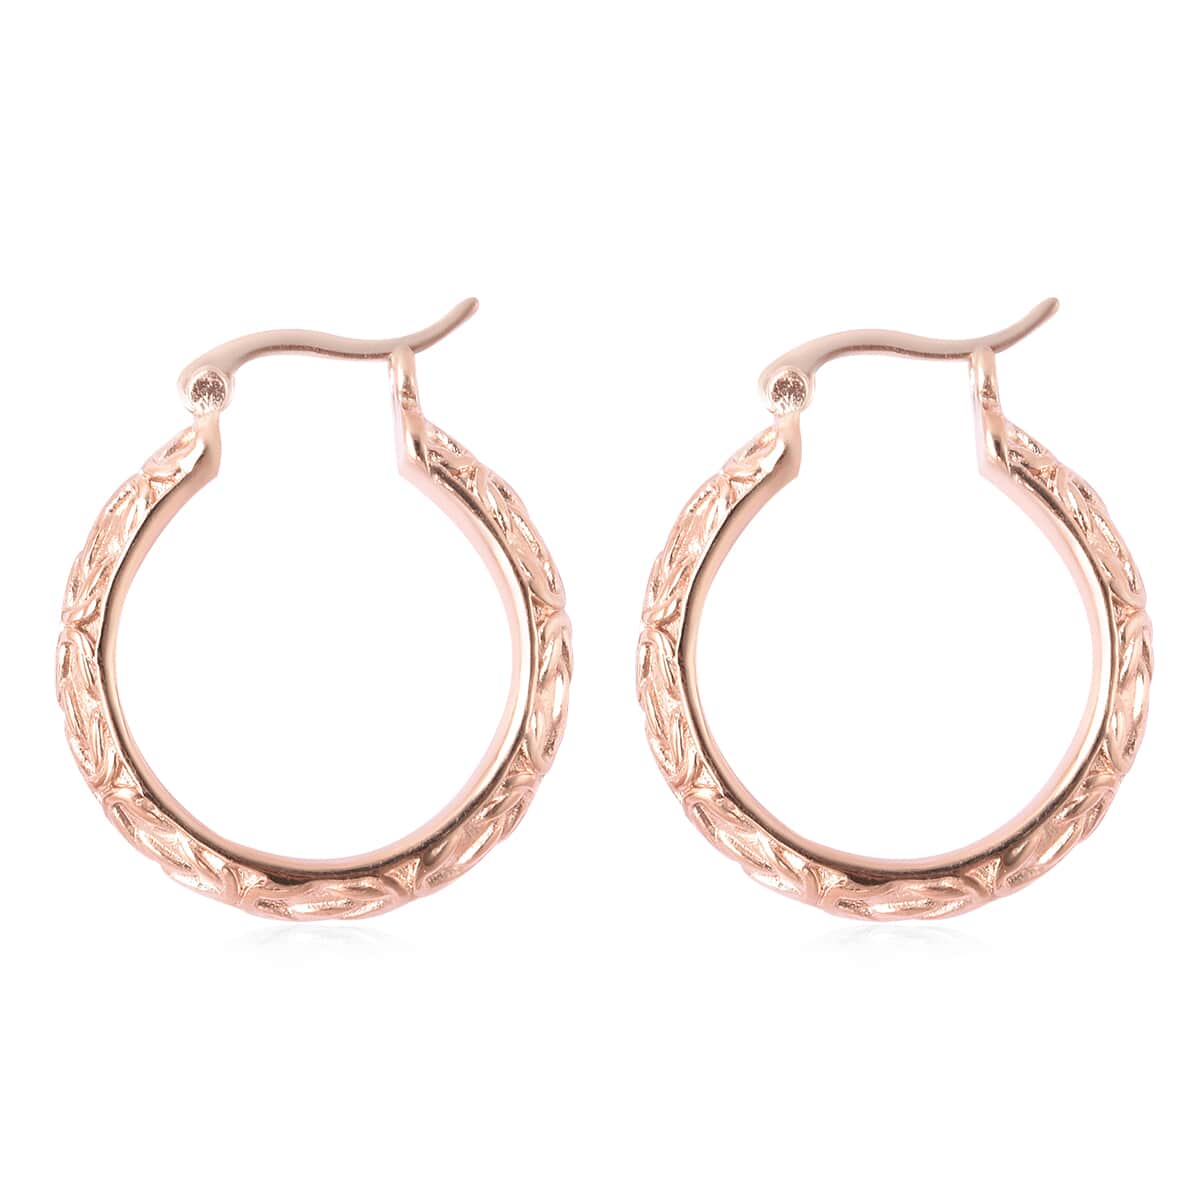 Buy Engraved Hoop Earrings in ION Plated Rose Gold Stainless Steel